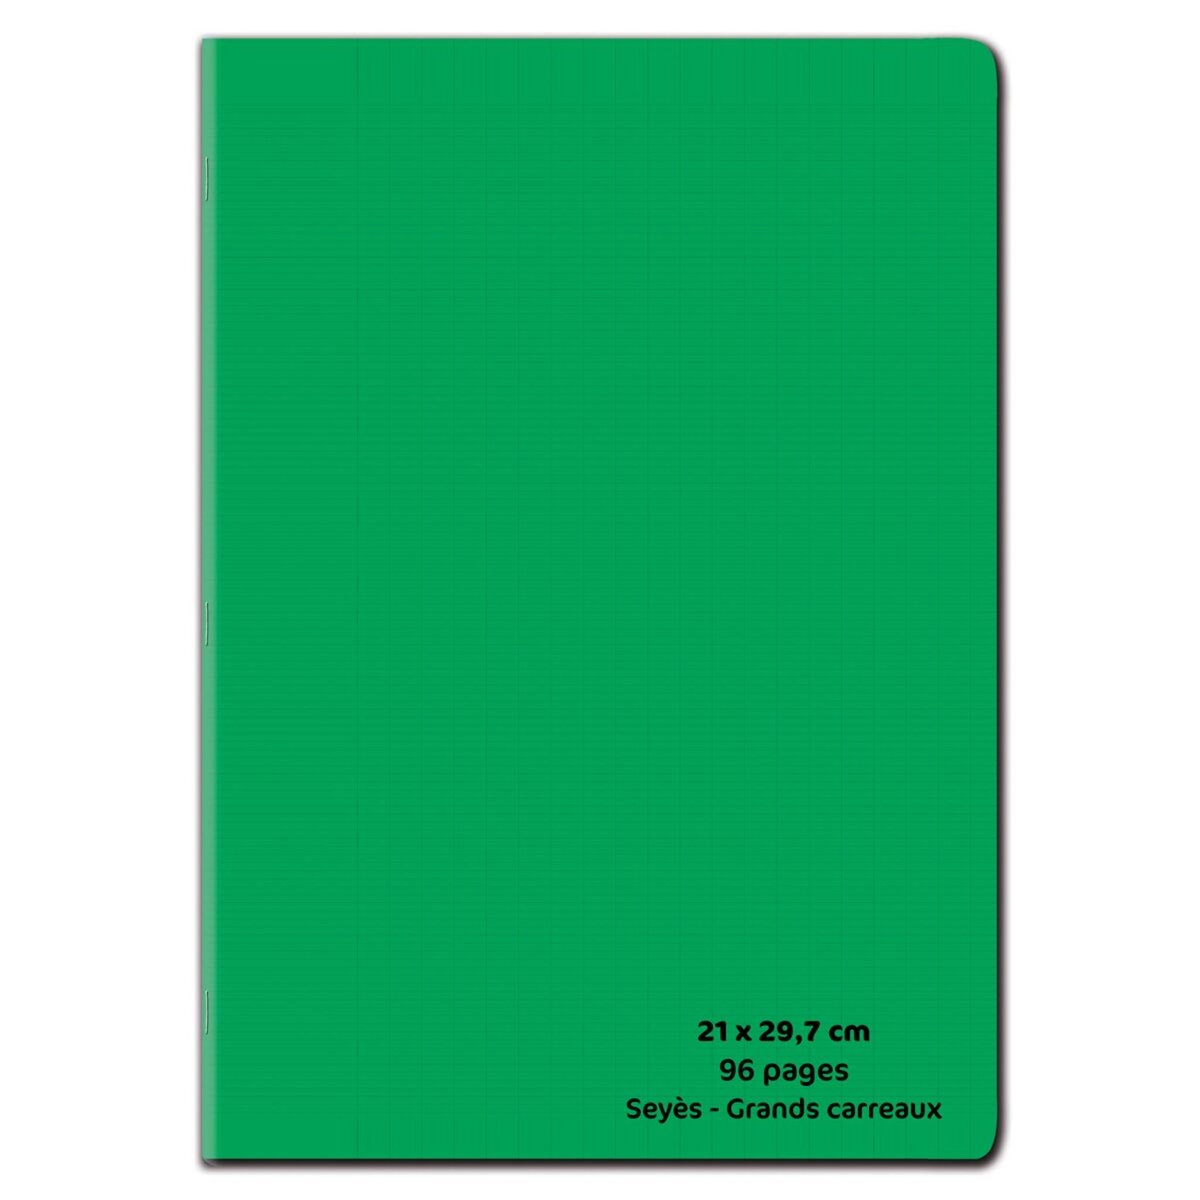 POUCE Cahier piqué polypro 21x29,7cm 96 pages grands carreaux Seyes vert